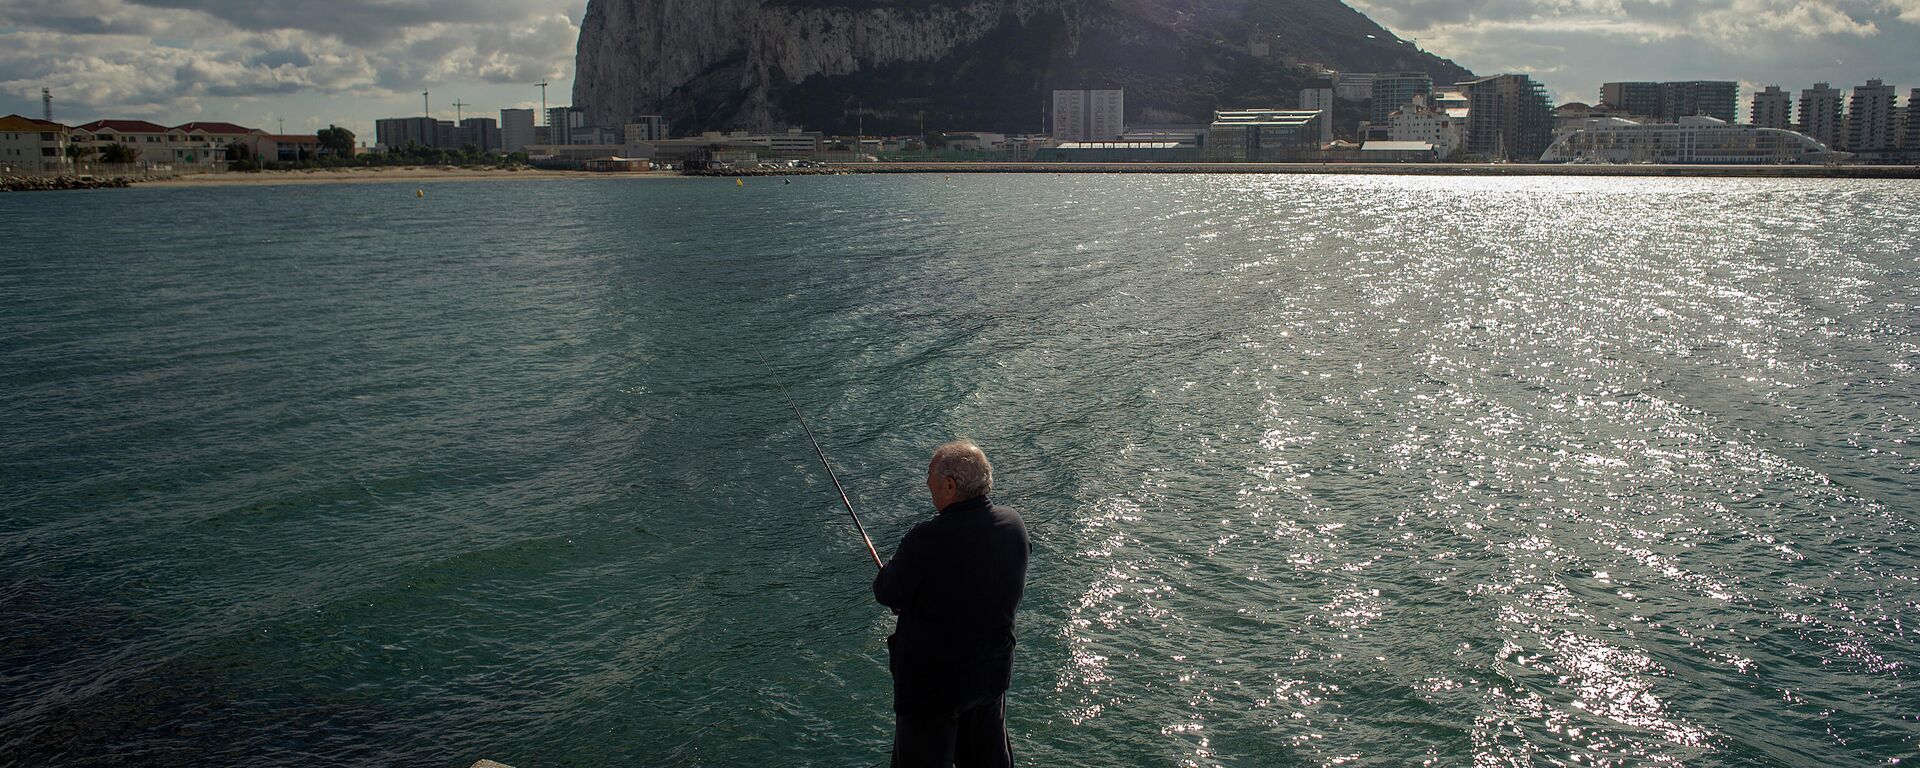 Hombre pescando frente a Gibraltar - Sputnik Mundo, 1920, 25.03.2021